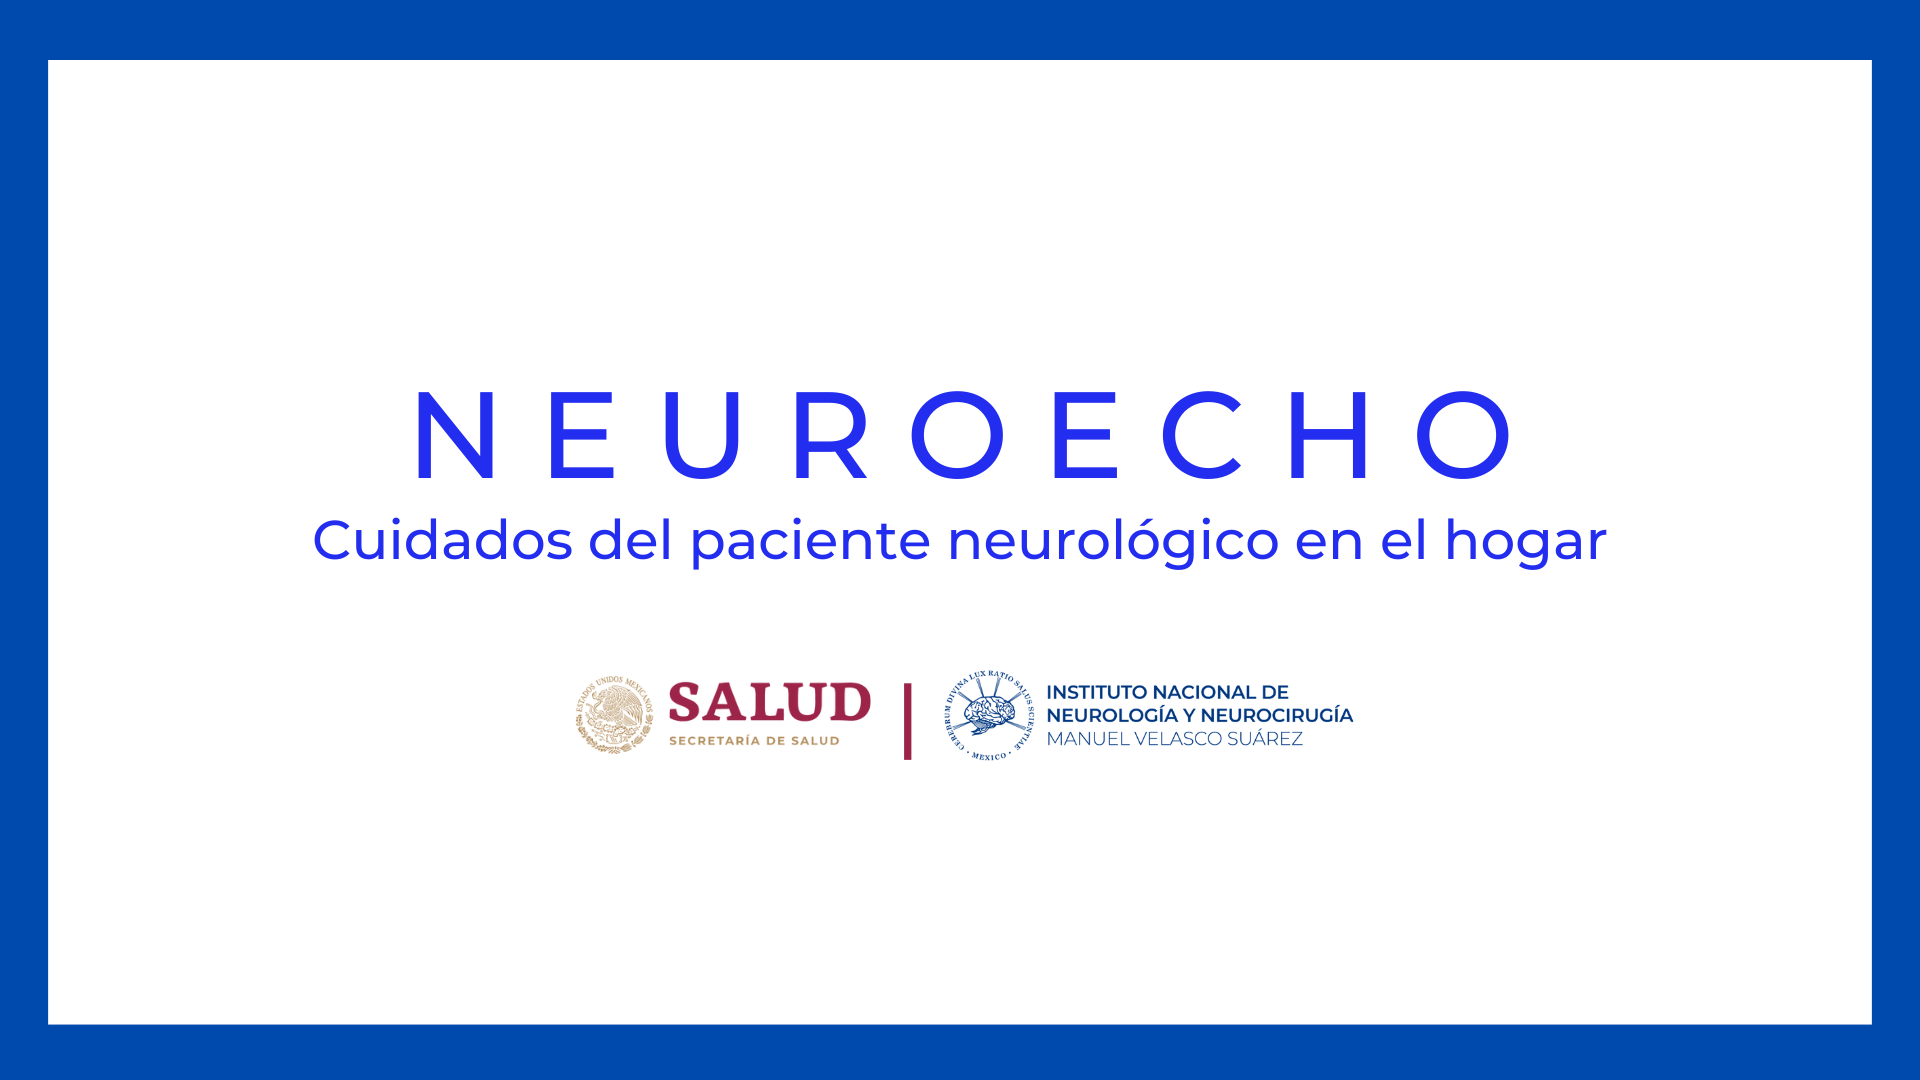 NEUROECHO: CUIDADOS DEL PACIENTE NEUROLÓGICO EN EL HOGAR